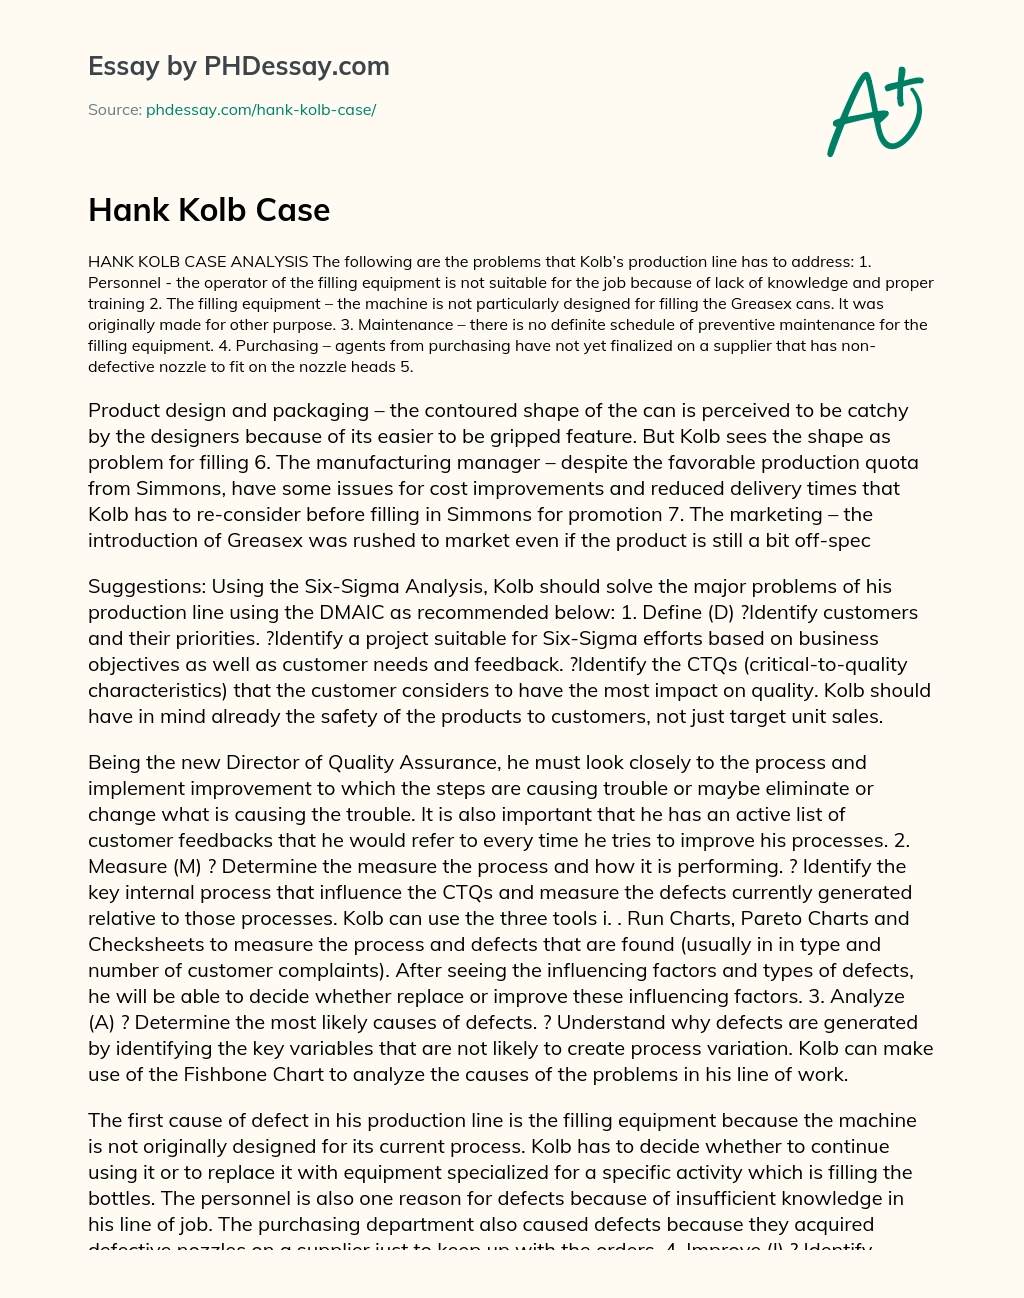 Hank Kolb Case essay